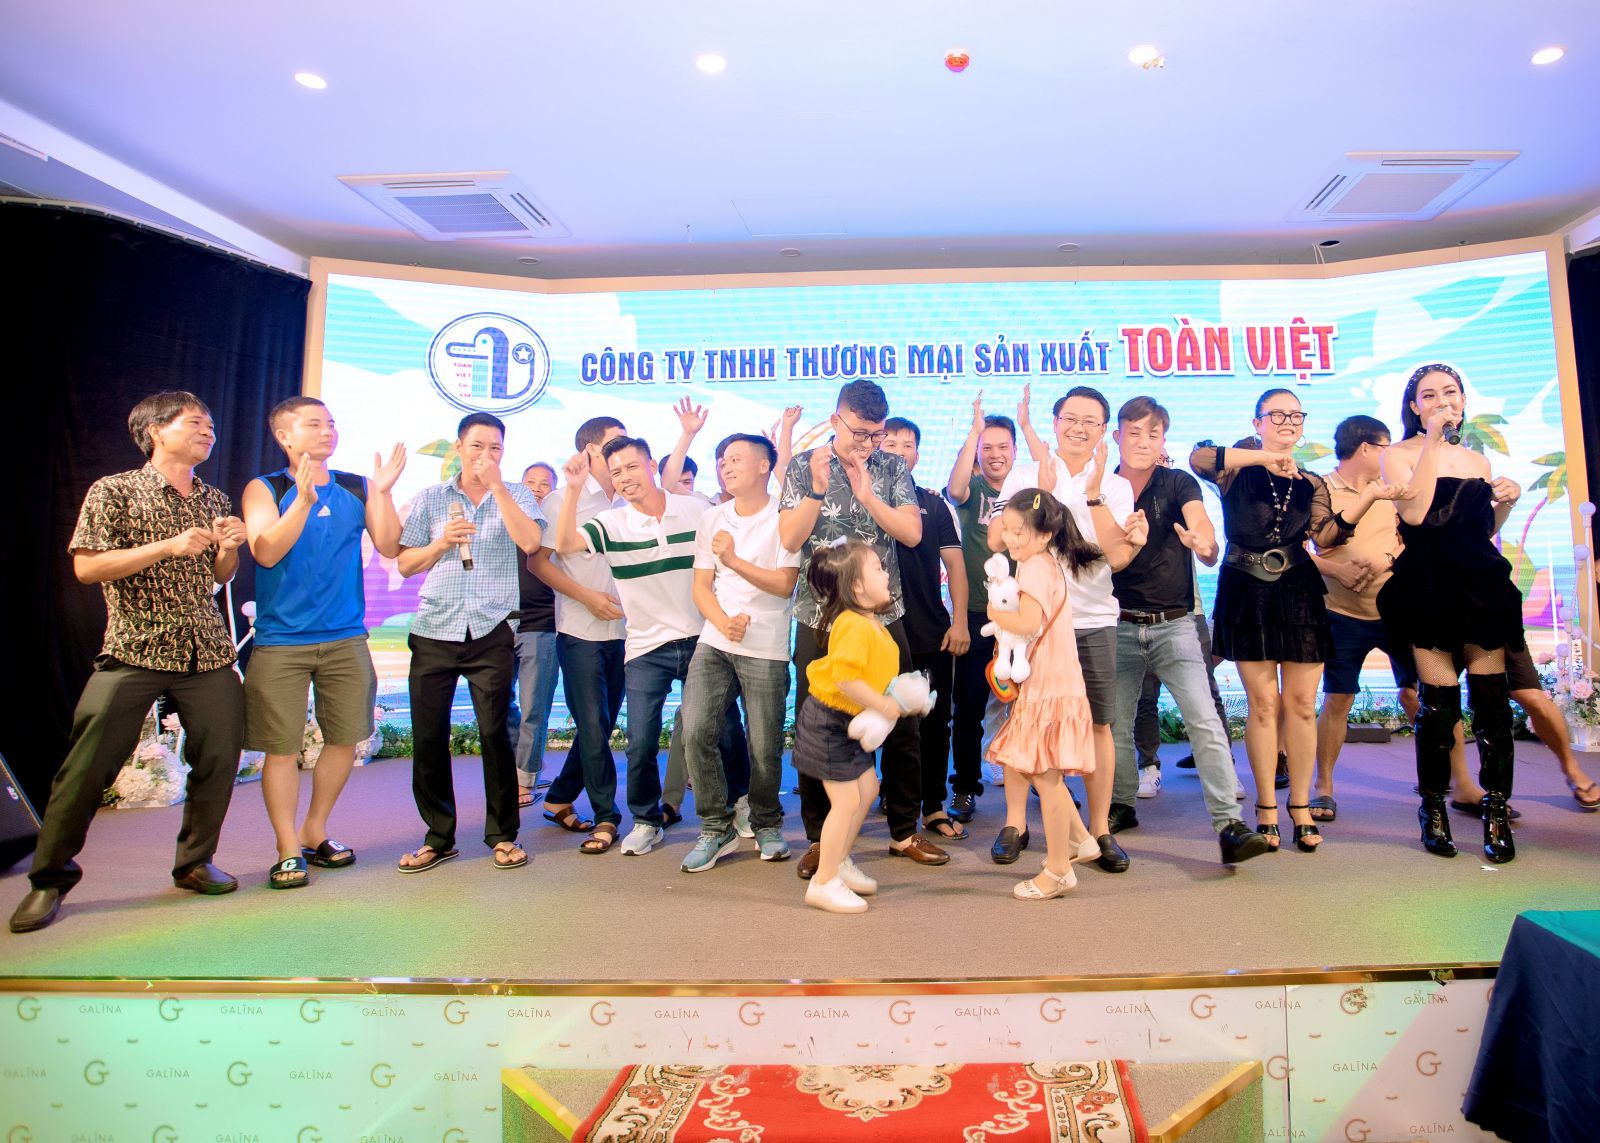 Bảng báo giá teambuilding tại Đà Nẵng